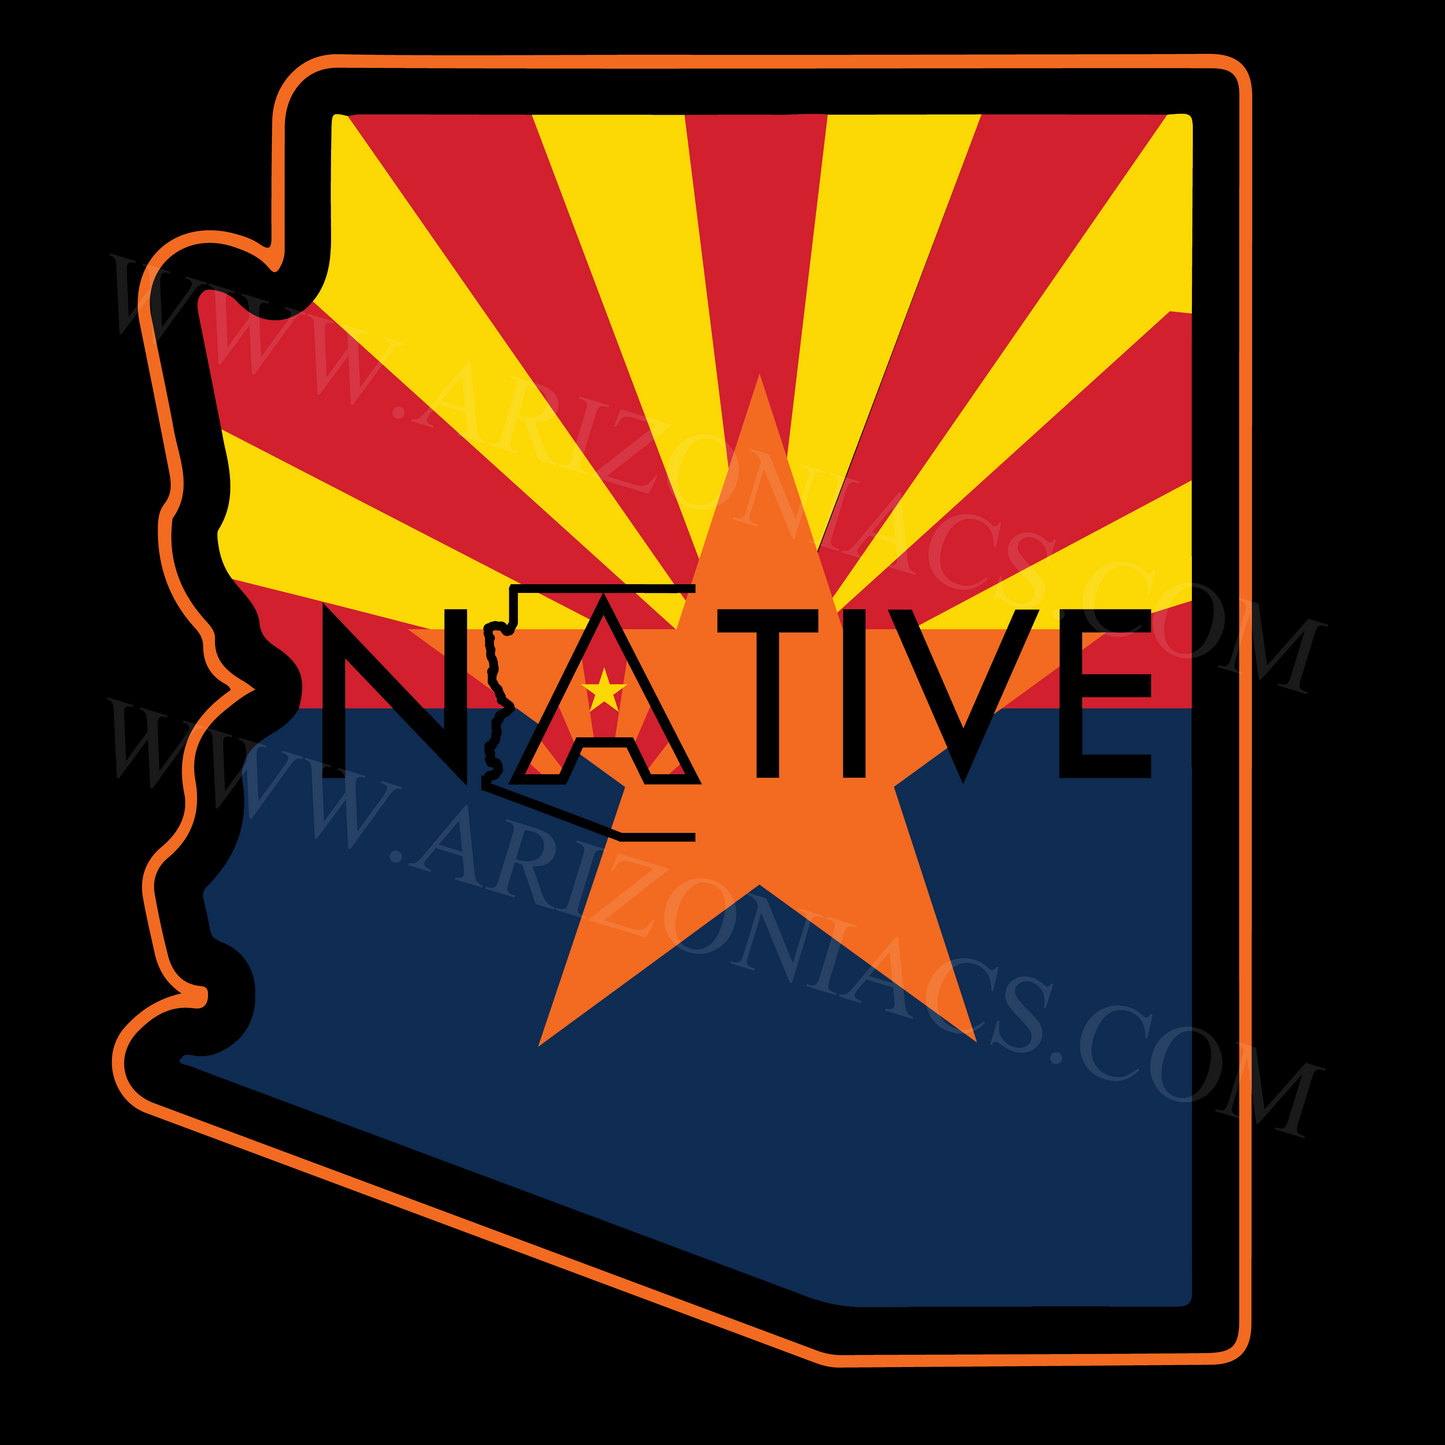 Arizona Native